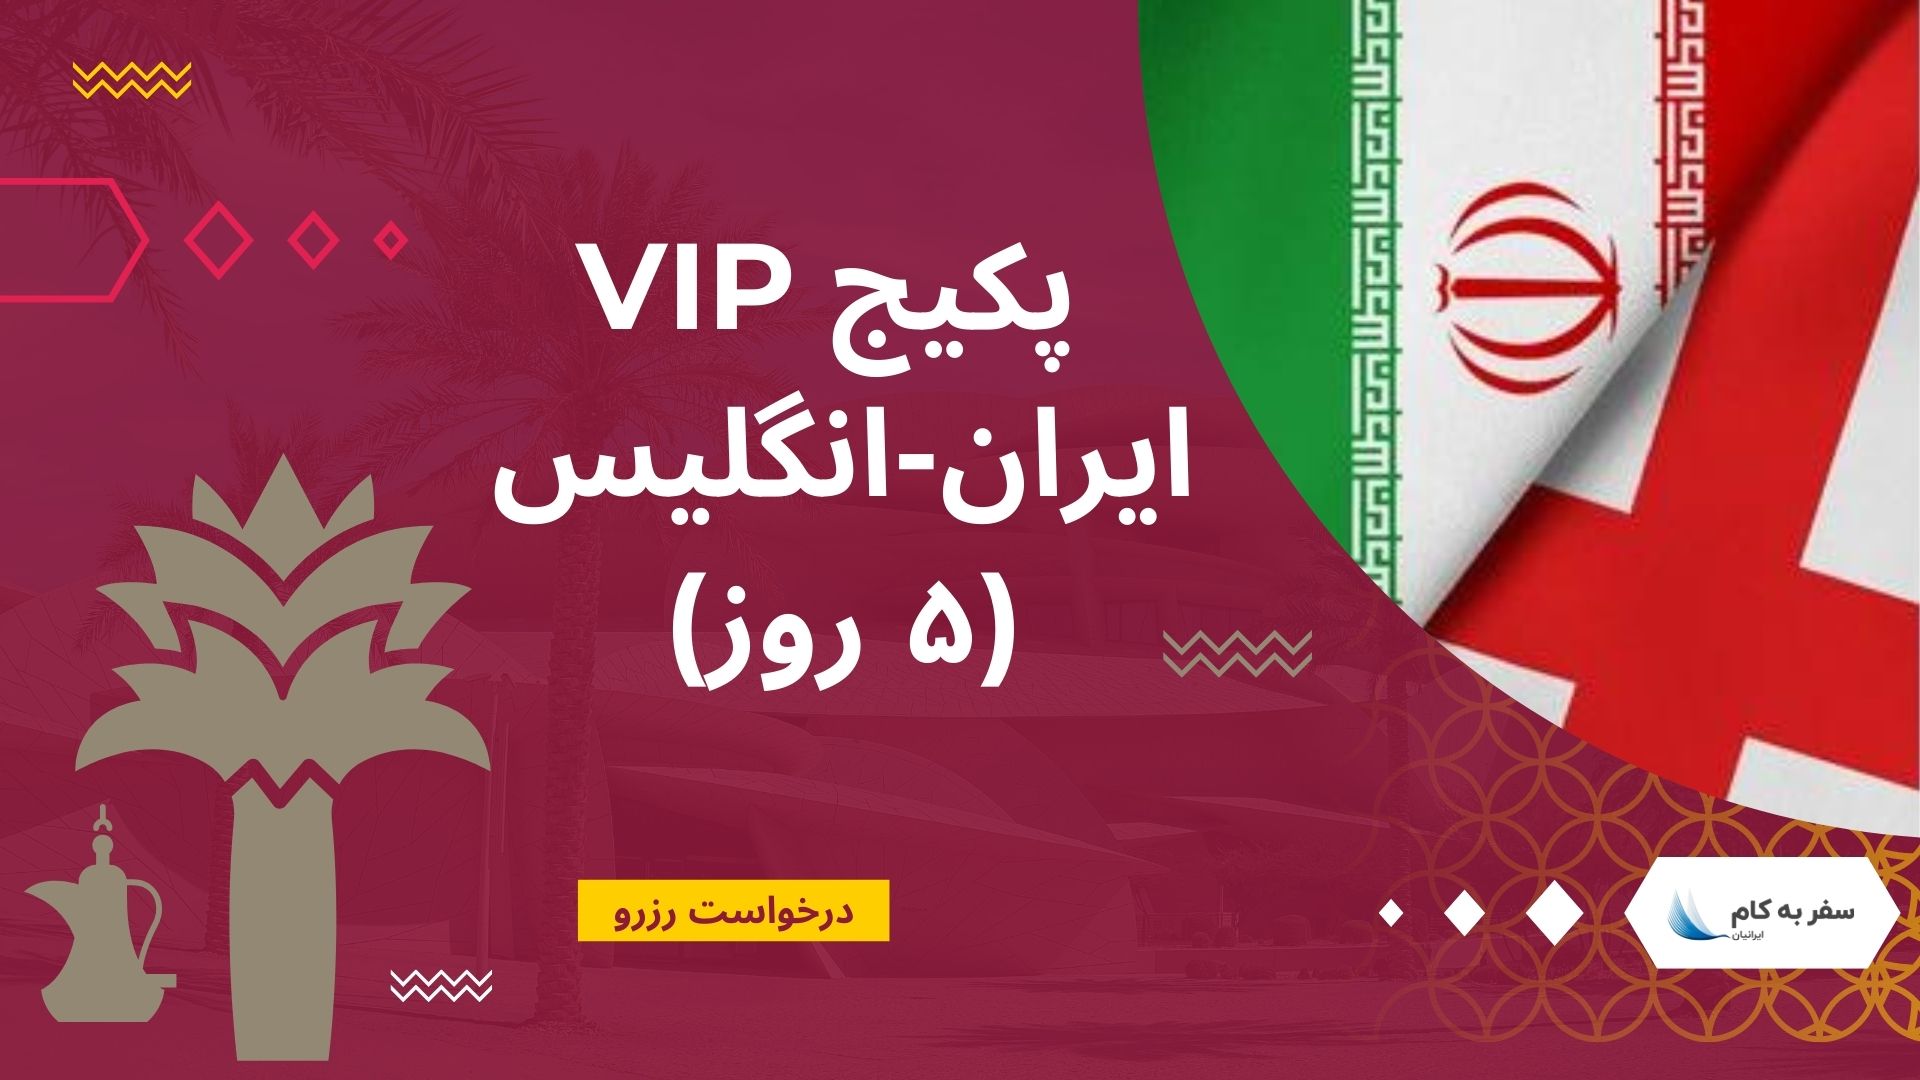 پکیج VIP ایران انگلیس (۵ روز)